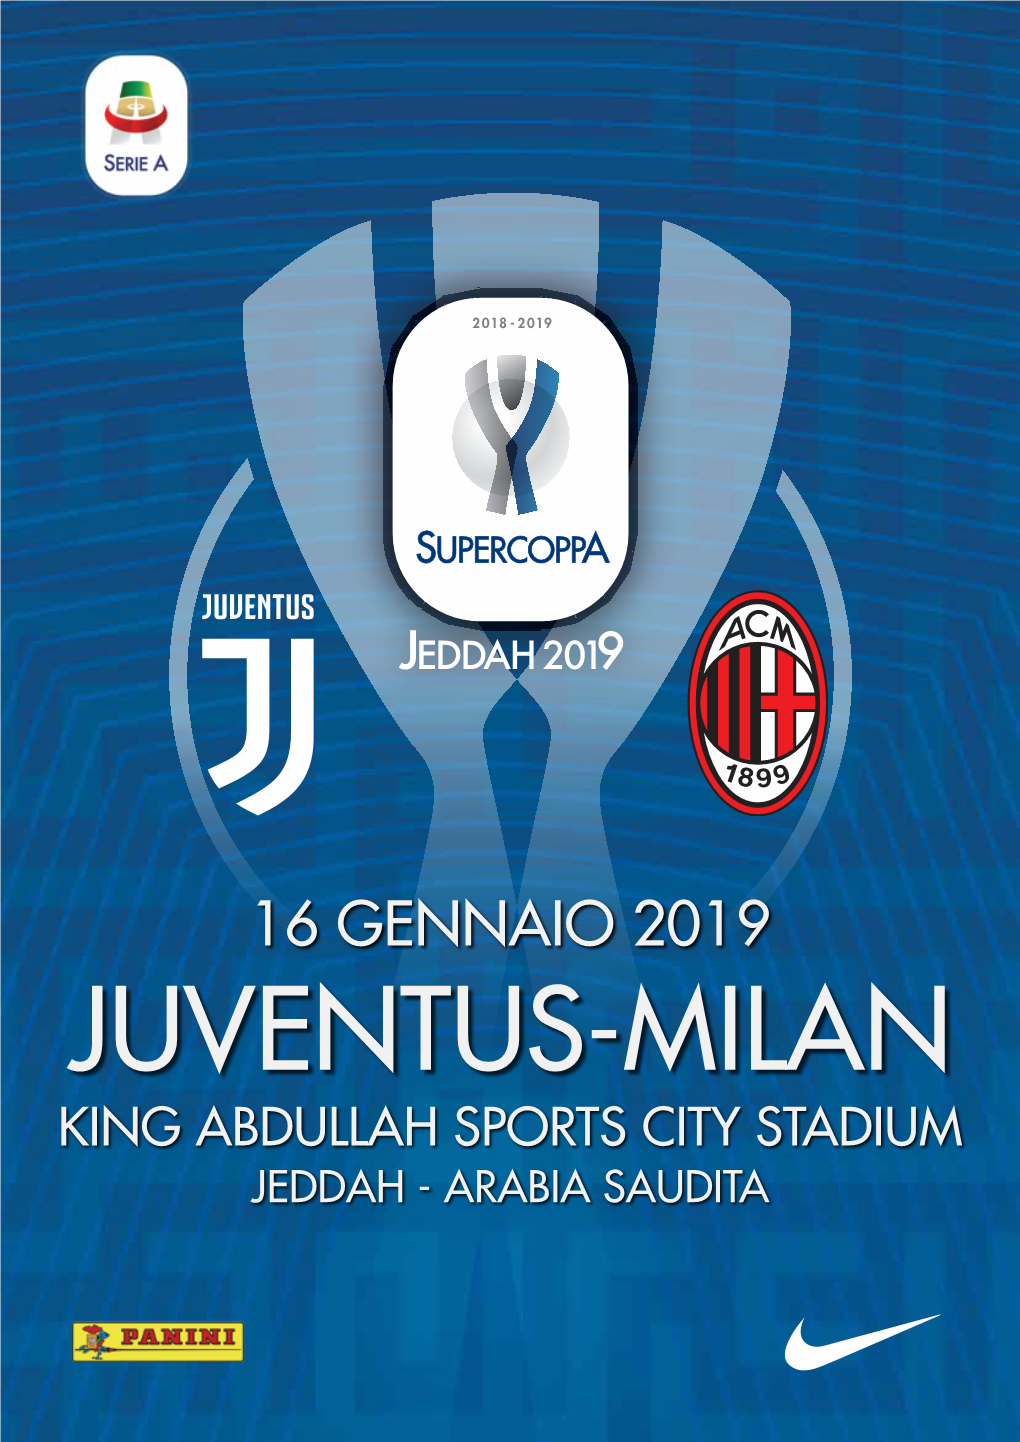 Juventus-Milan King Abdullah Sports City Stadium Jeddah - Arabia Saudita Albo D’Oro